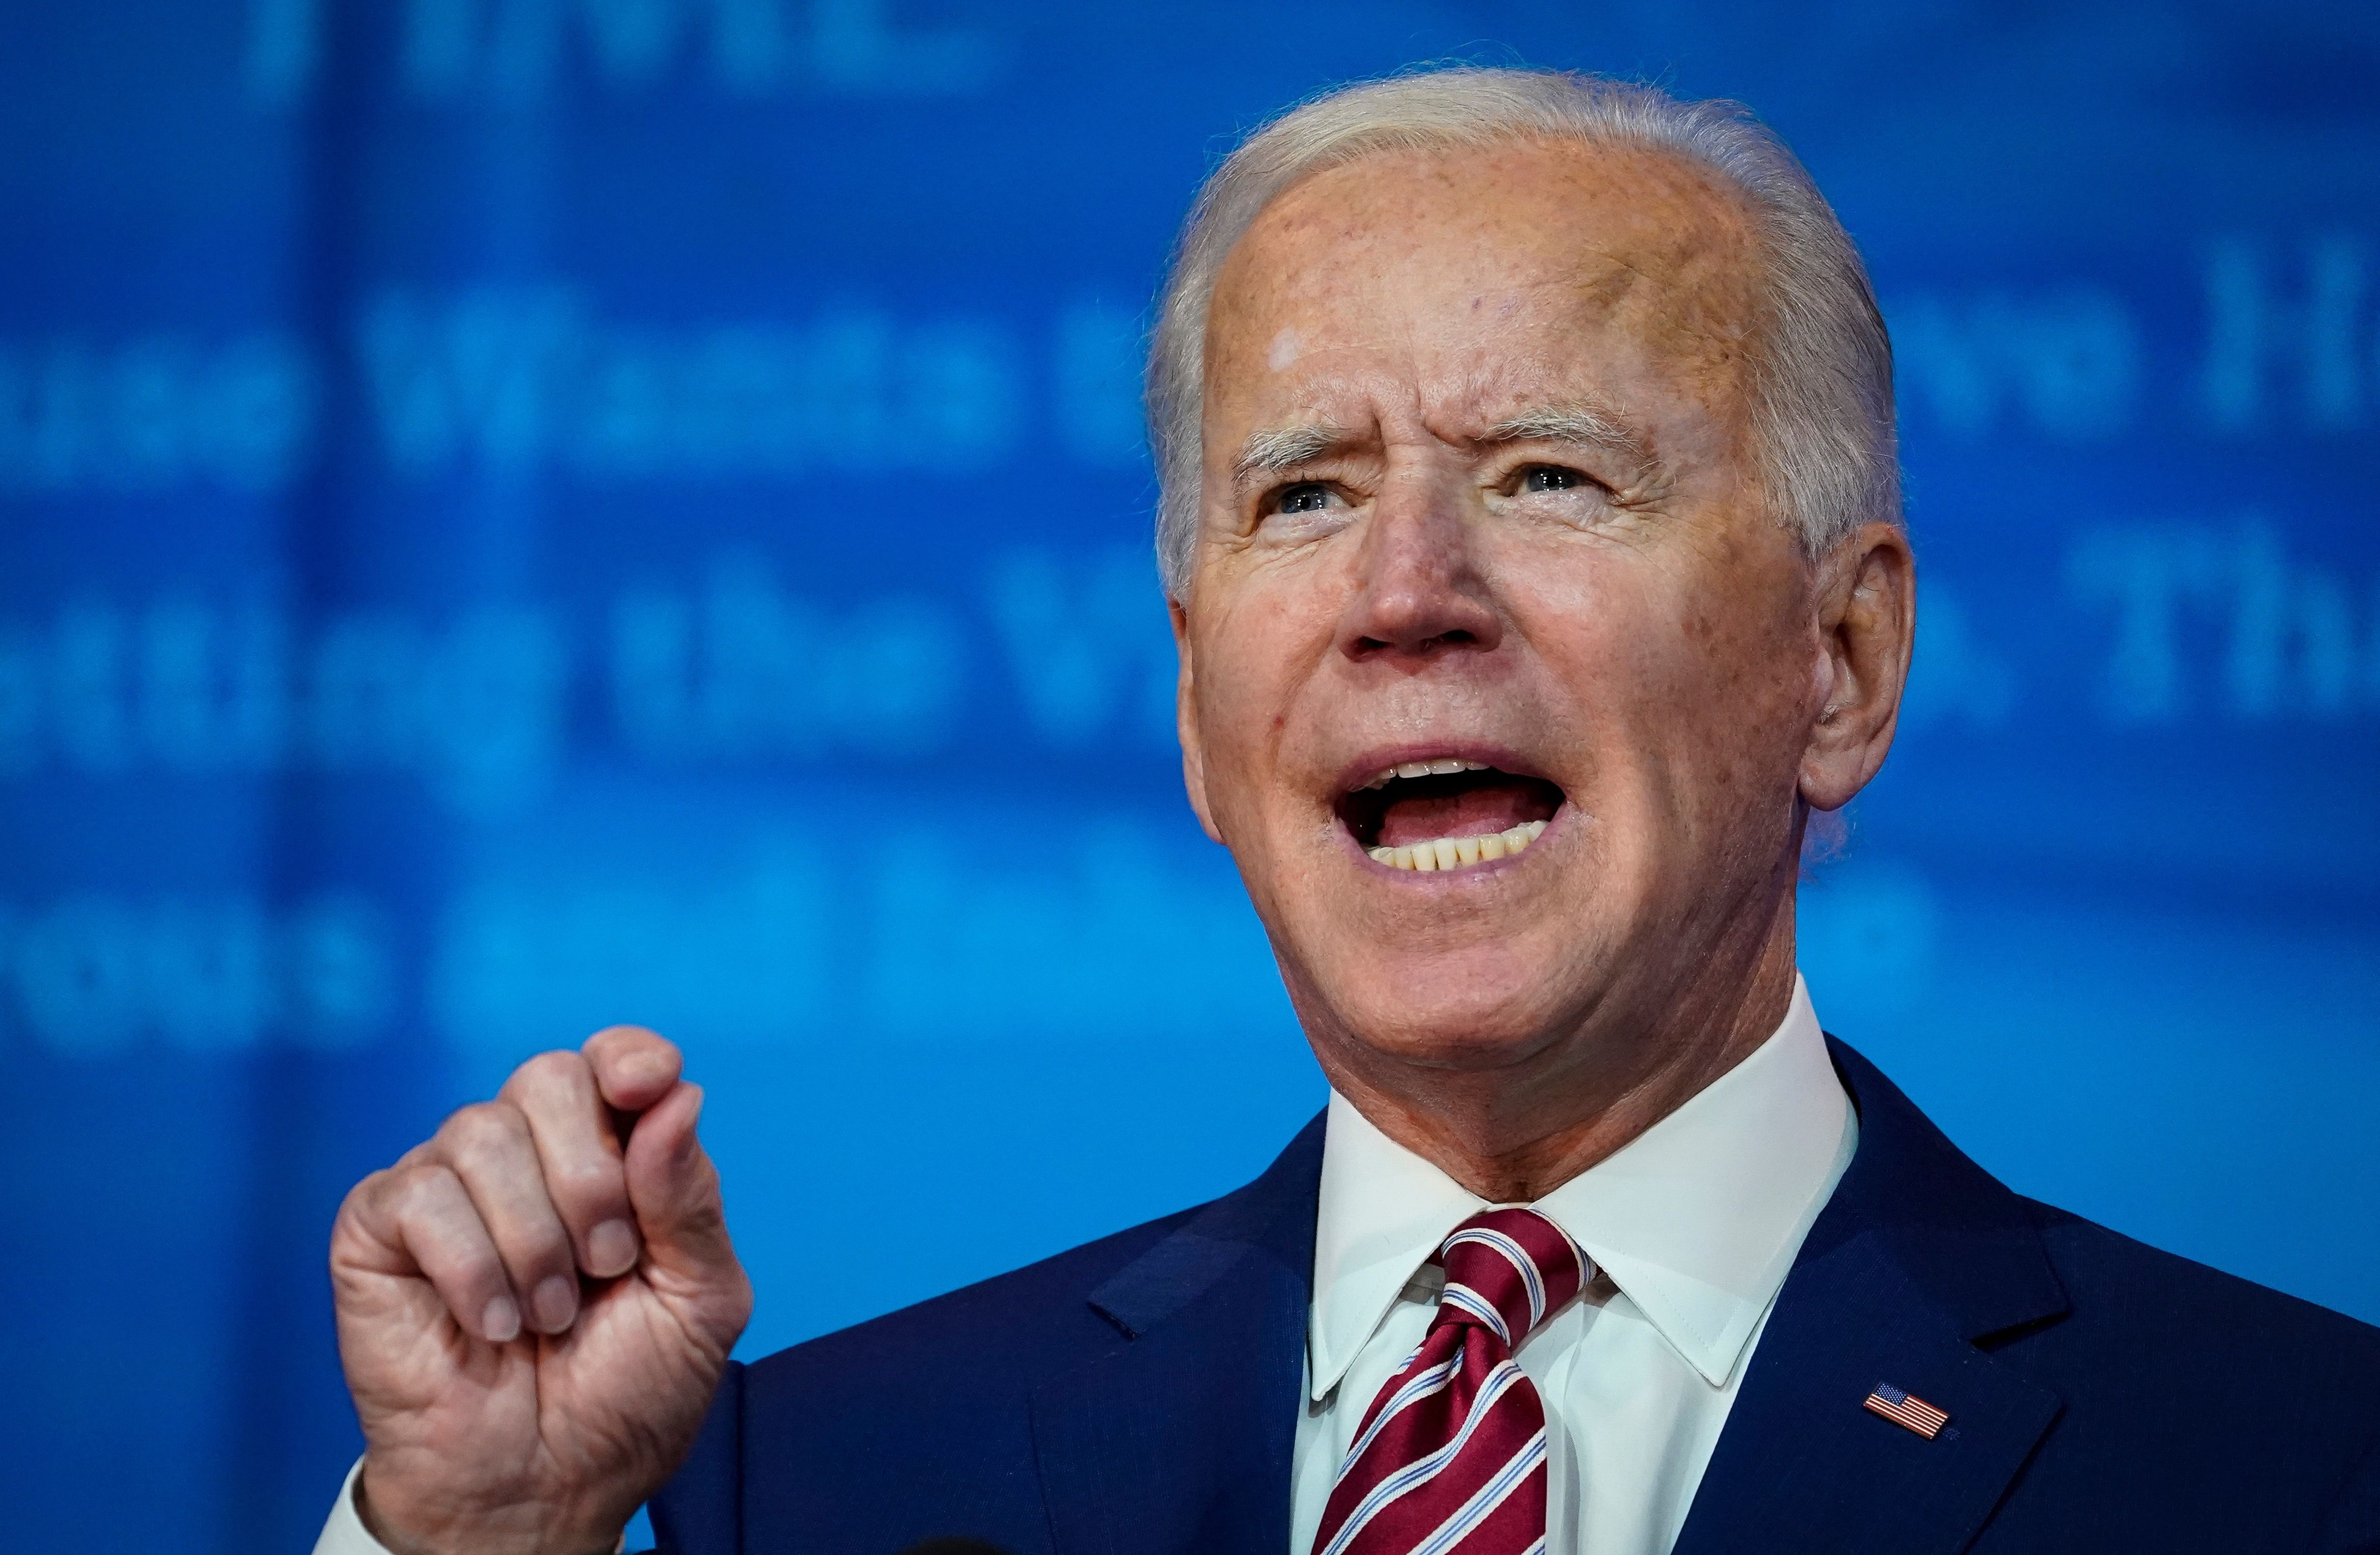 Joe Biden was declared the scheduled winner on Saturday